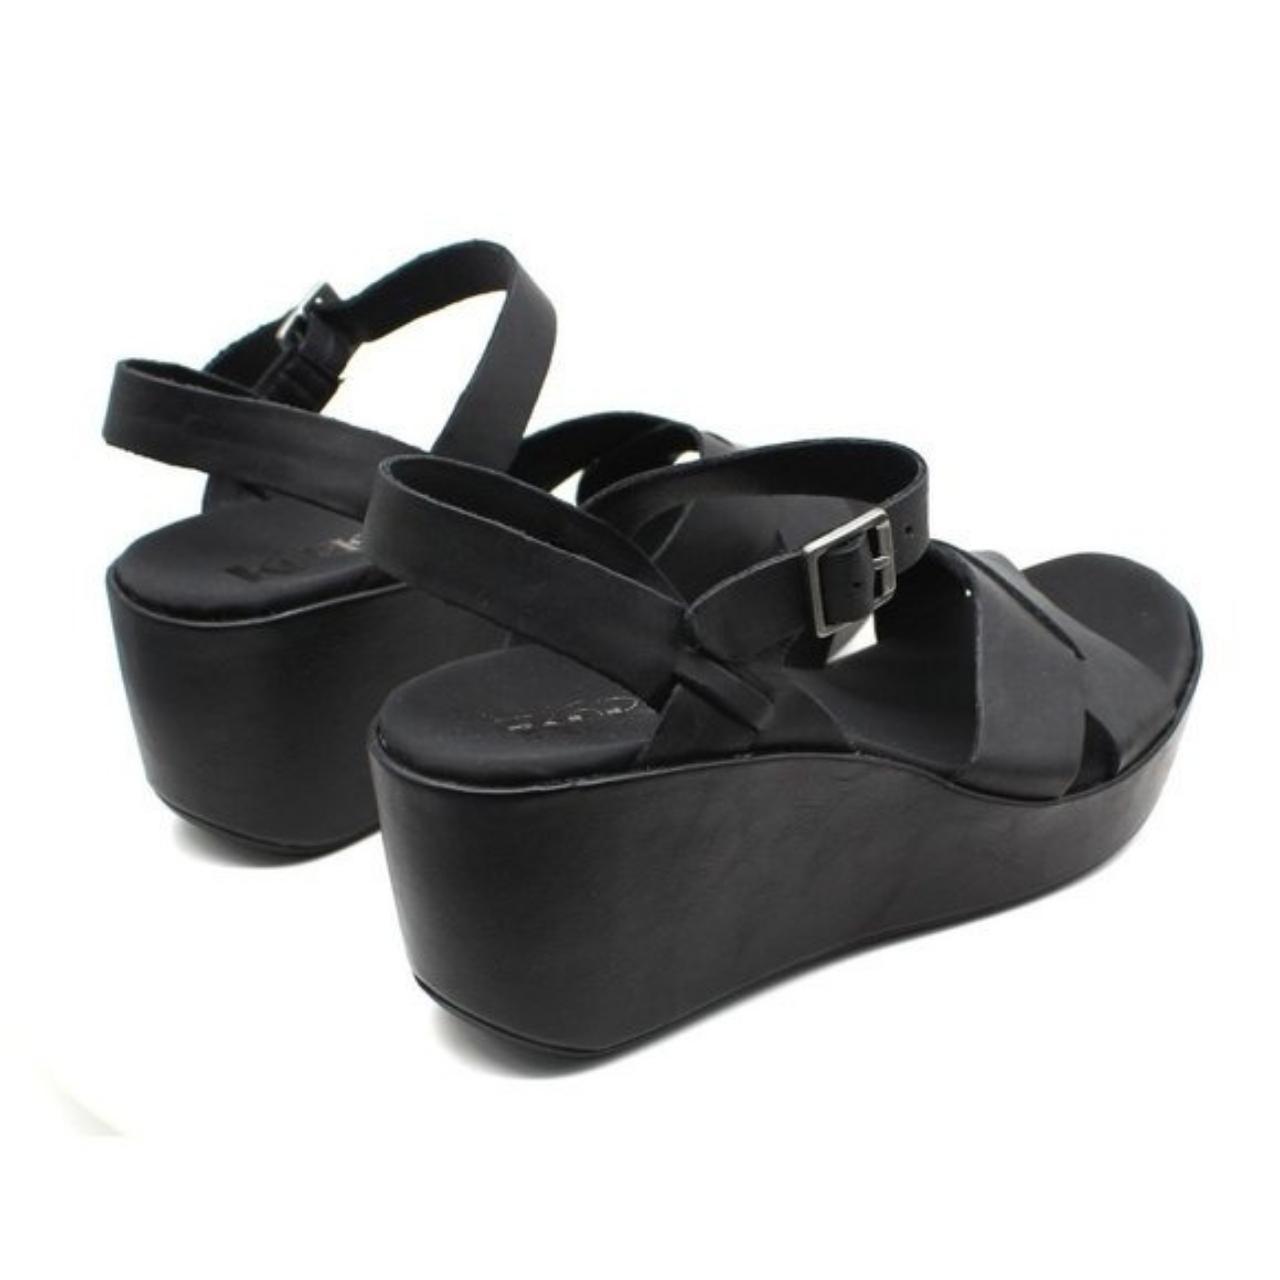 Product Image 2 - Korks Women's Denica Sandals Women's